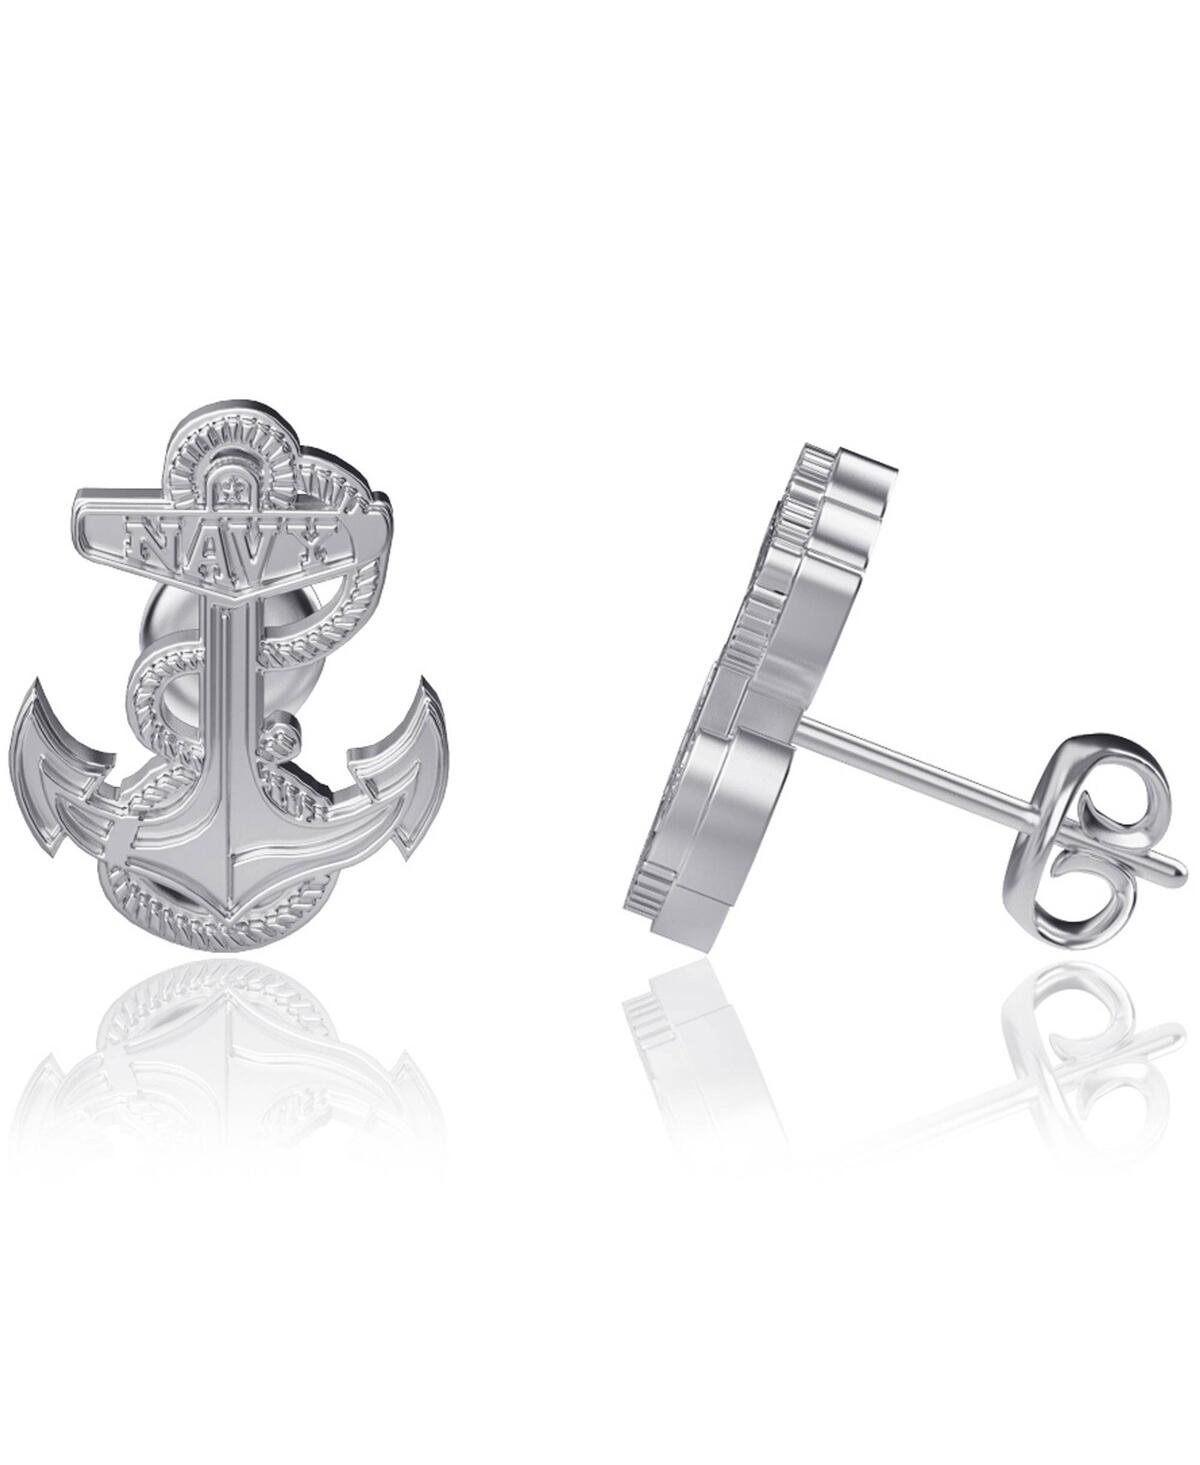 Dayna Designs Women's  Navy Midshipmen Silver Post Earrings In Silver-tone